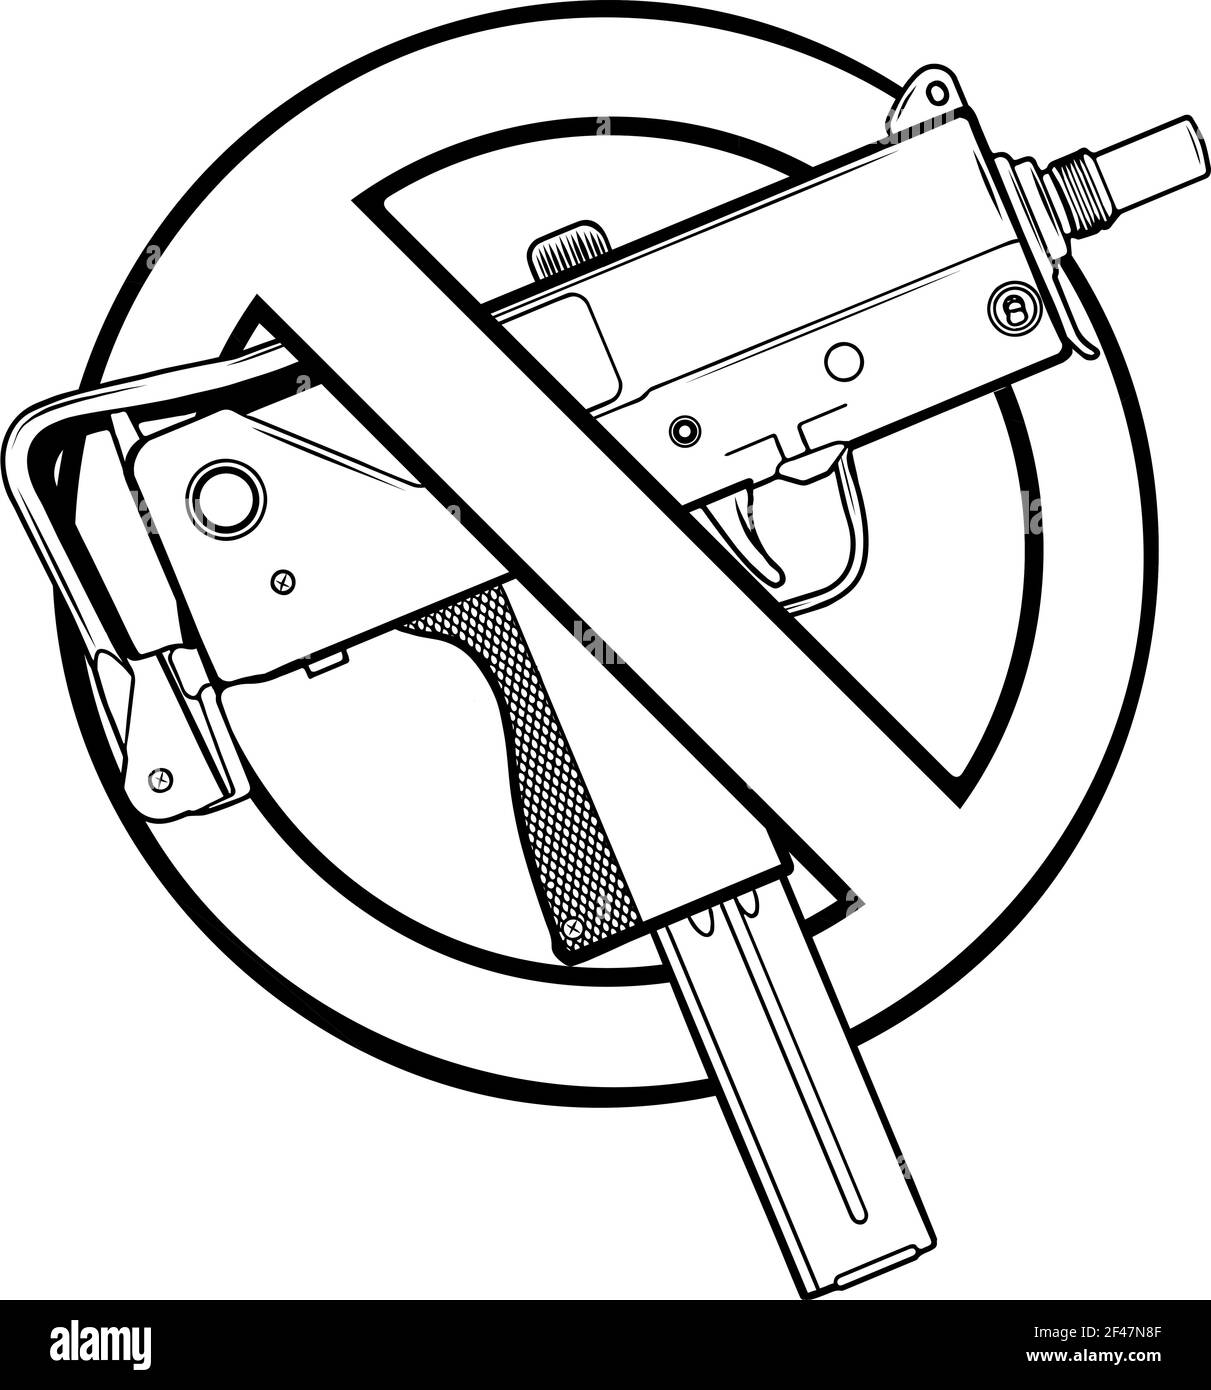 dessinez en noir et blanc de l'illustration vectorielle sans fusils ou armes à feu autorisées Illustration de Vecteur